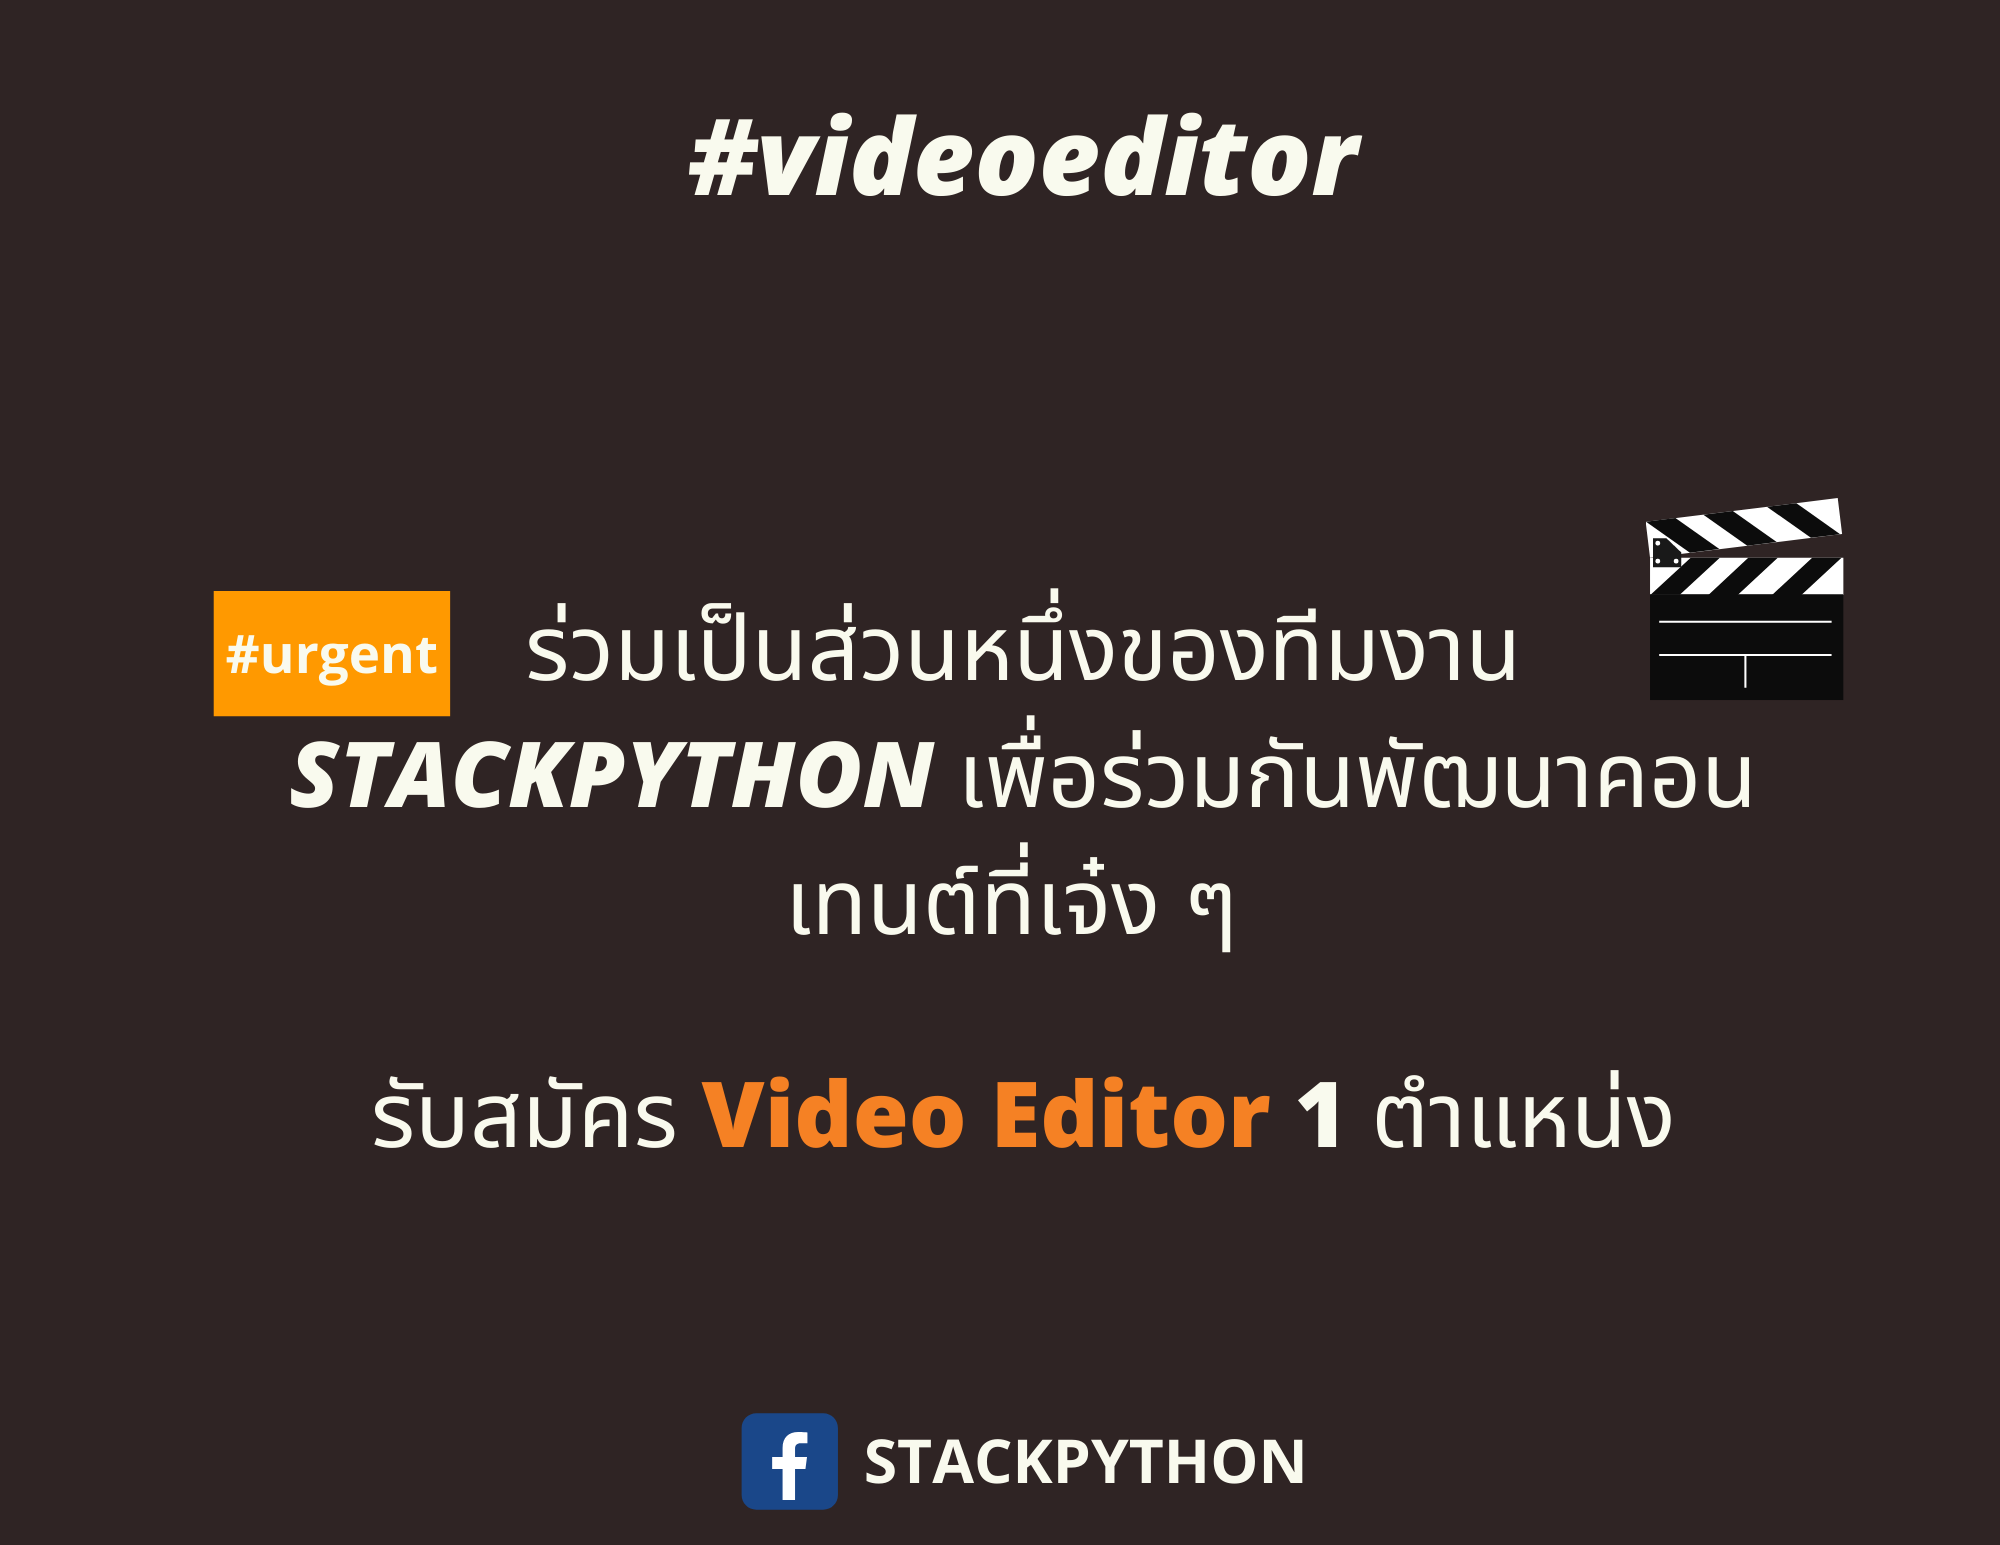 รับสมัคร Video Editor  เข้าร่วมทีม STACKPYTHON